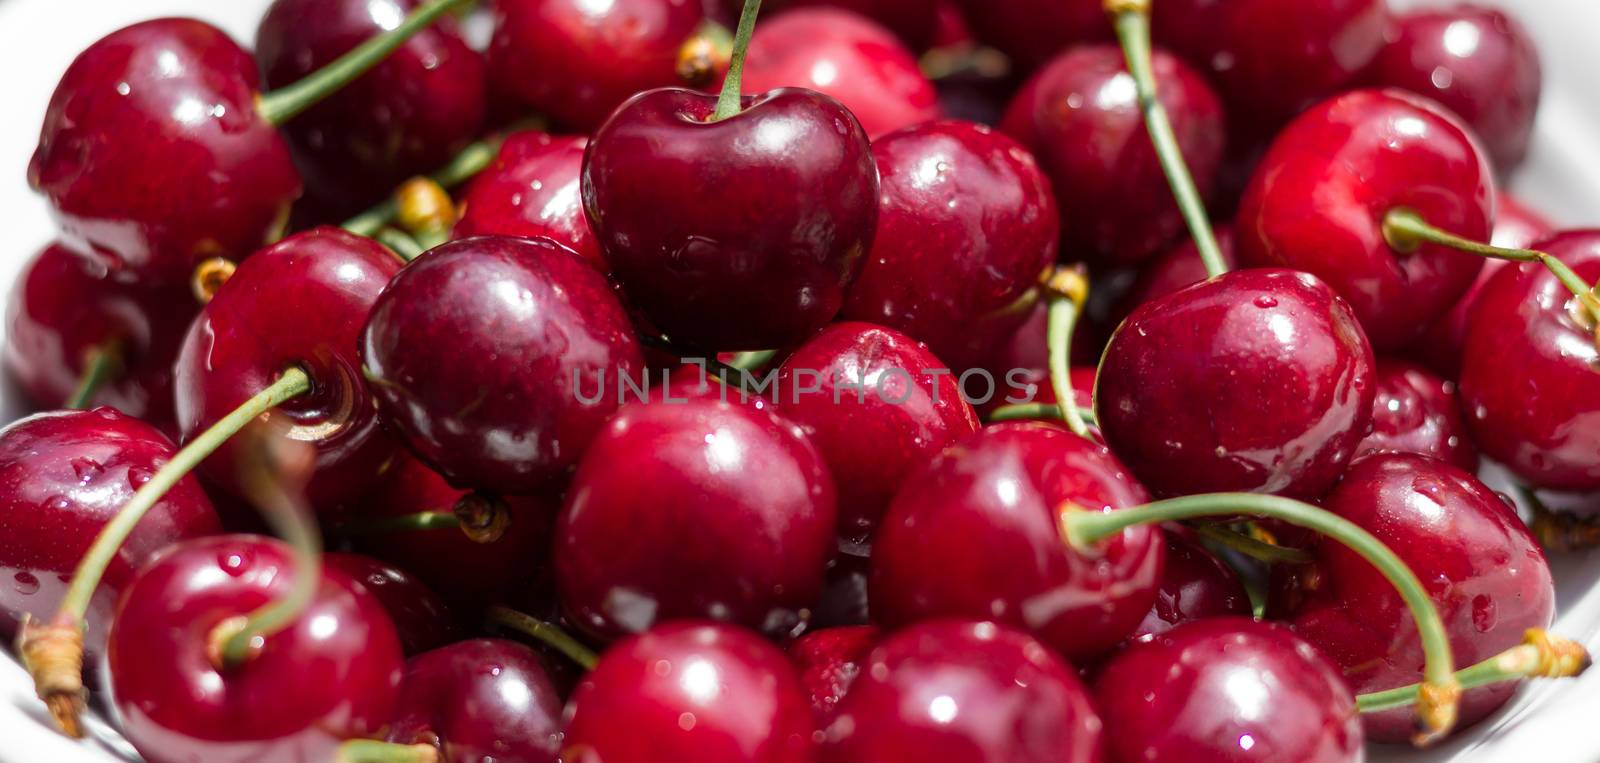 Cherries background by germanopoli